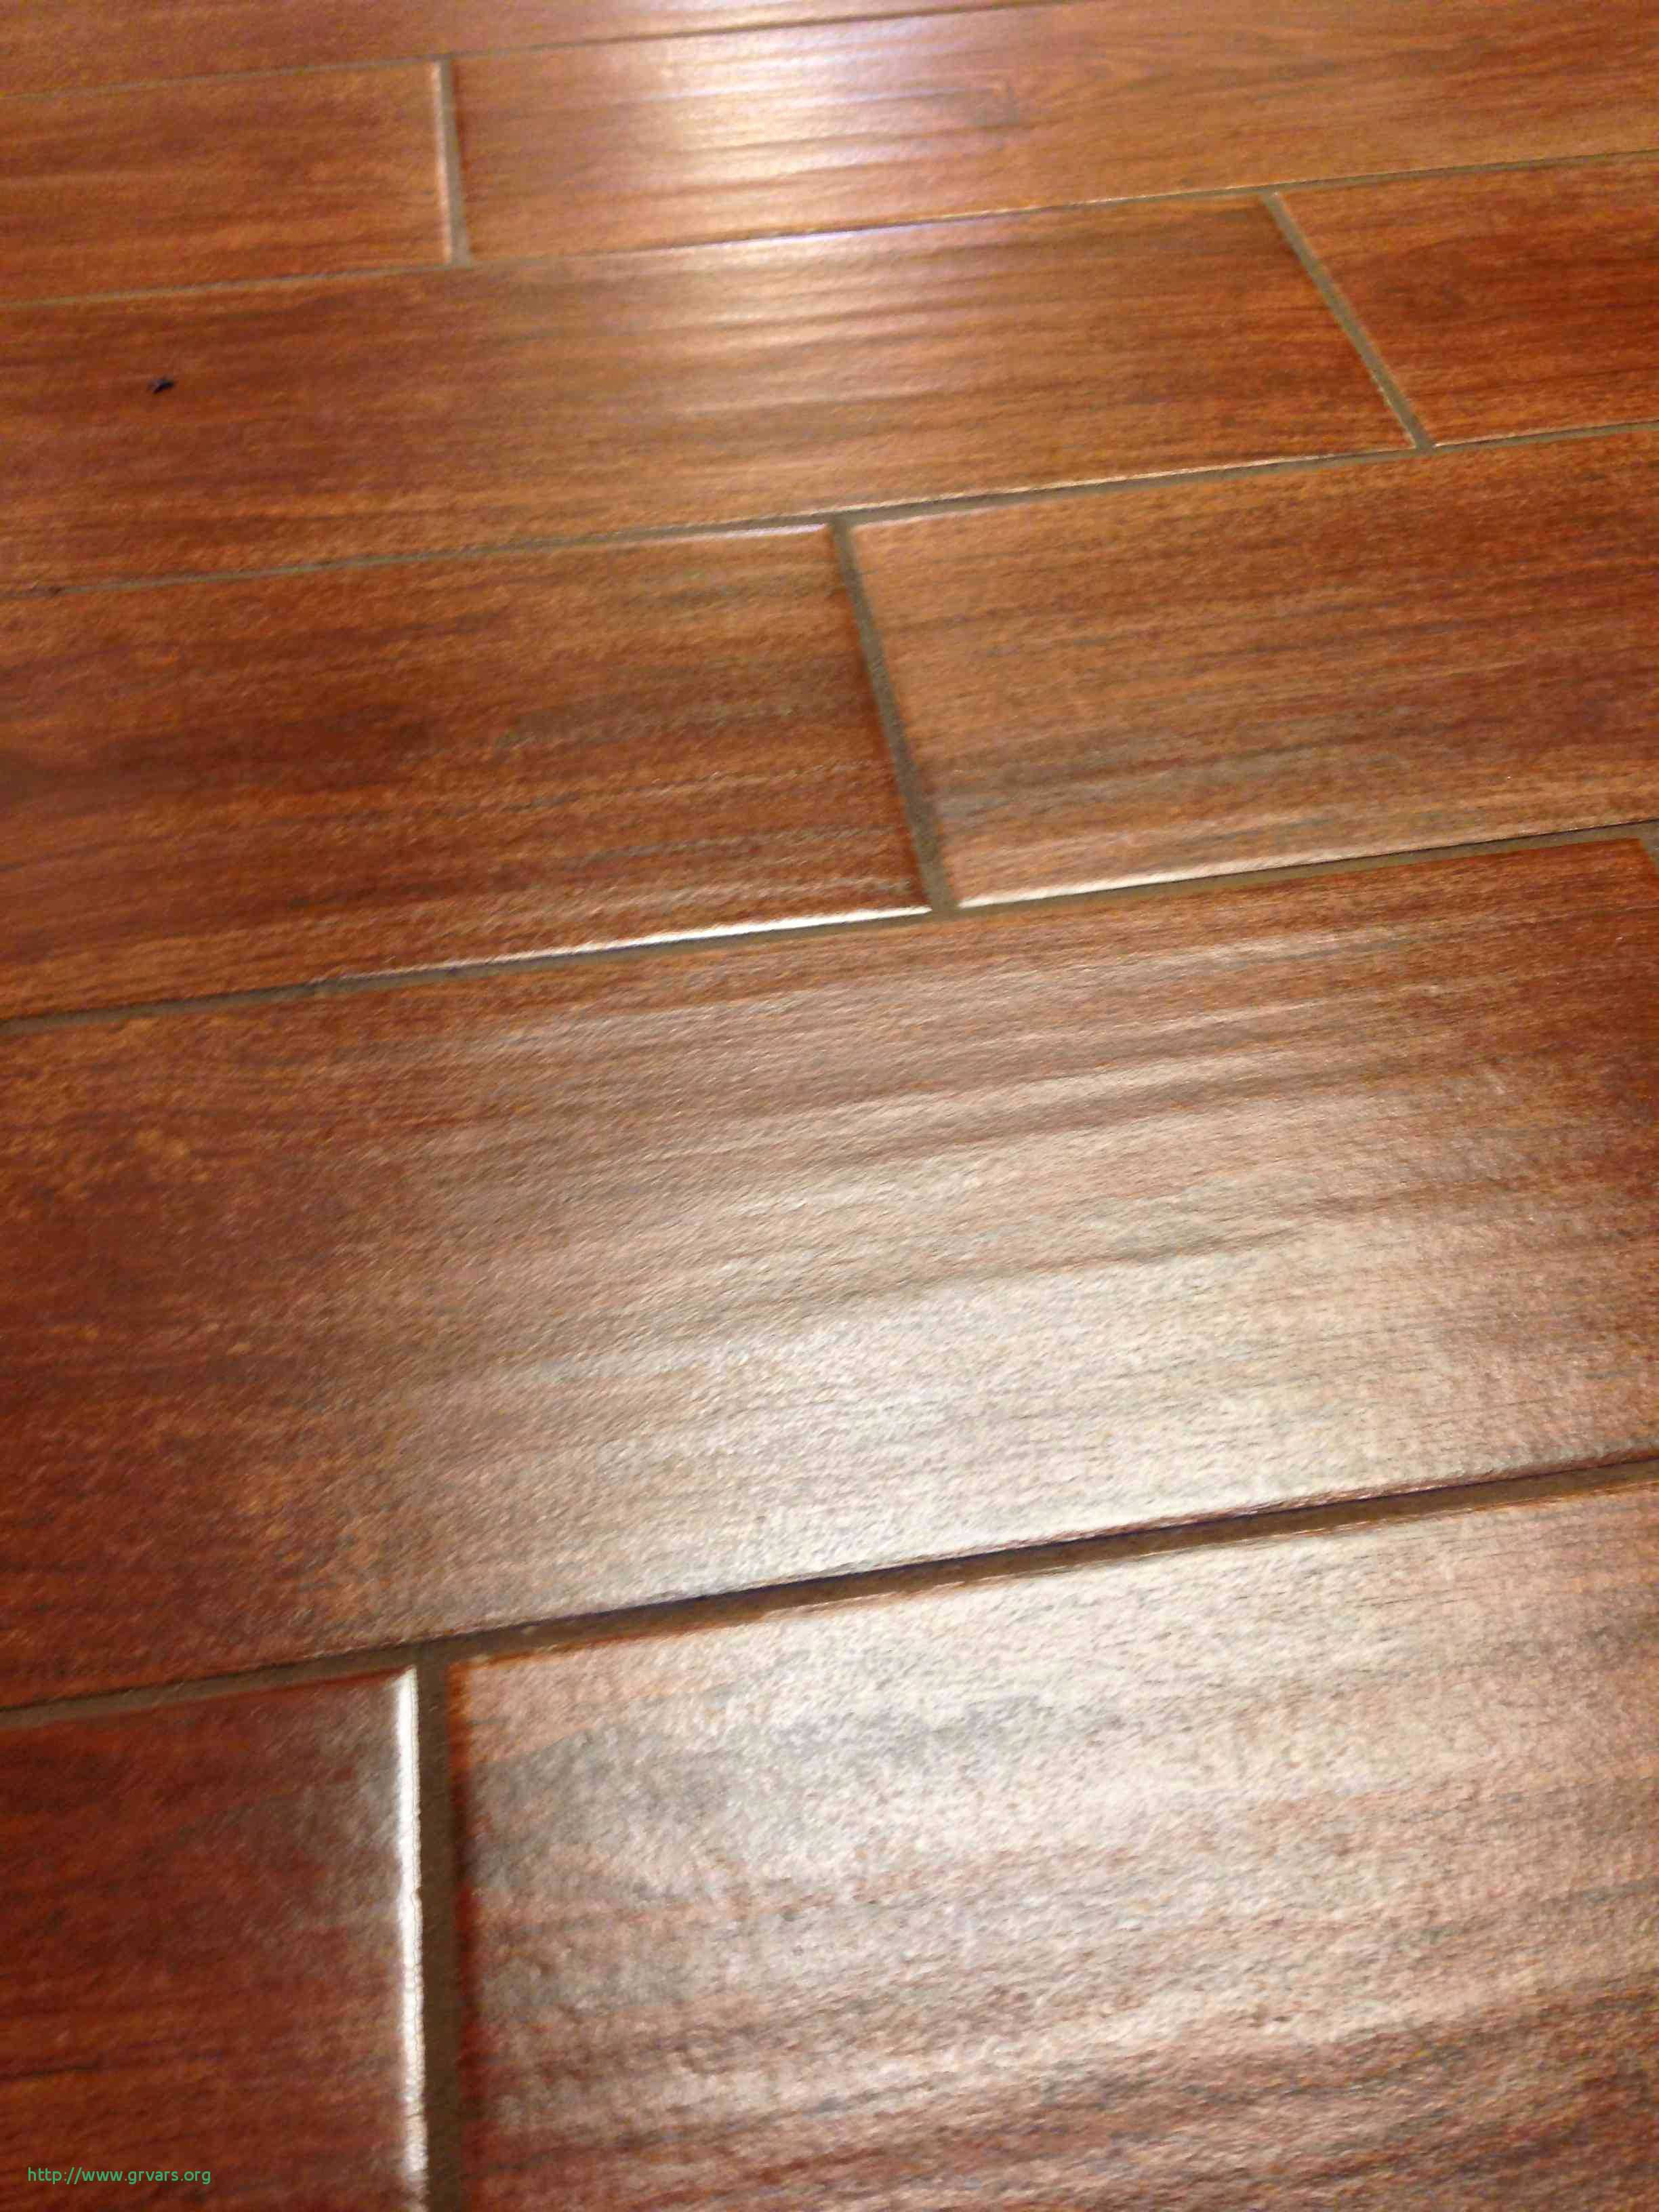 hardwood floor sanding toronto of 22 luxe hardwood floor refinishing winston salem nc ideas blog pertaining to harwood flooring best tile that looks like hardwood floors elegant i pinimg 736x 0d 7b